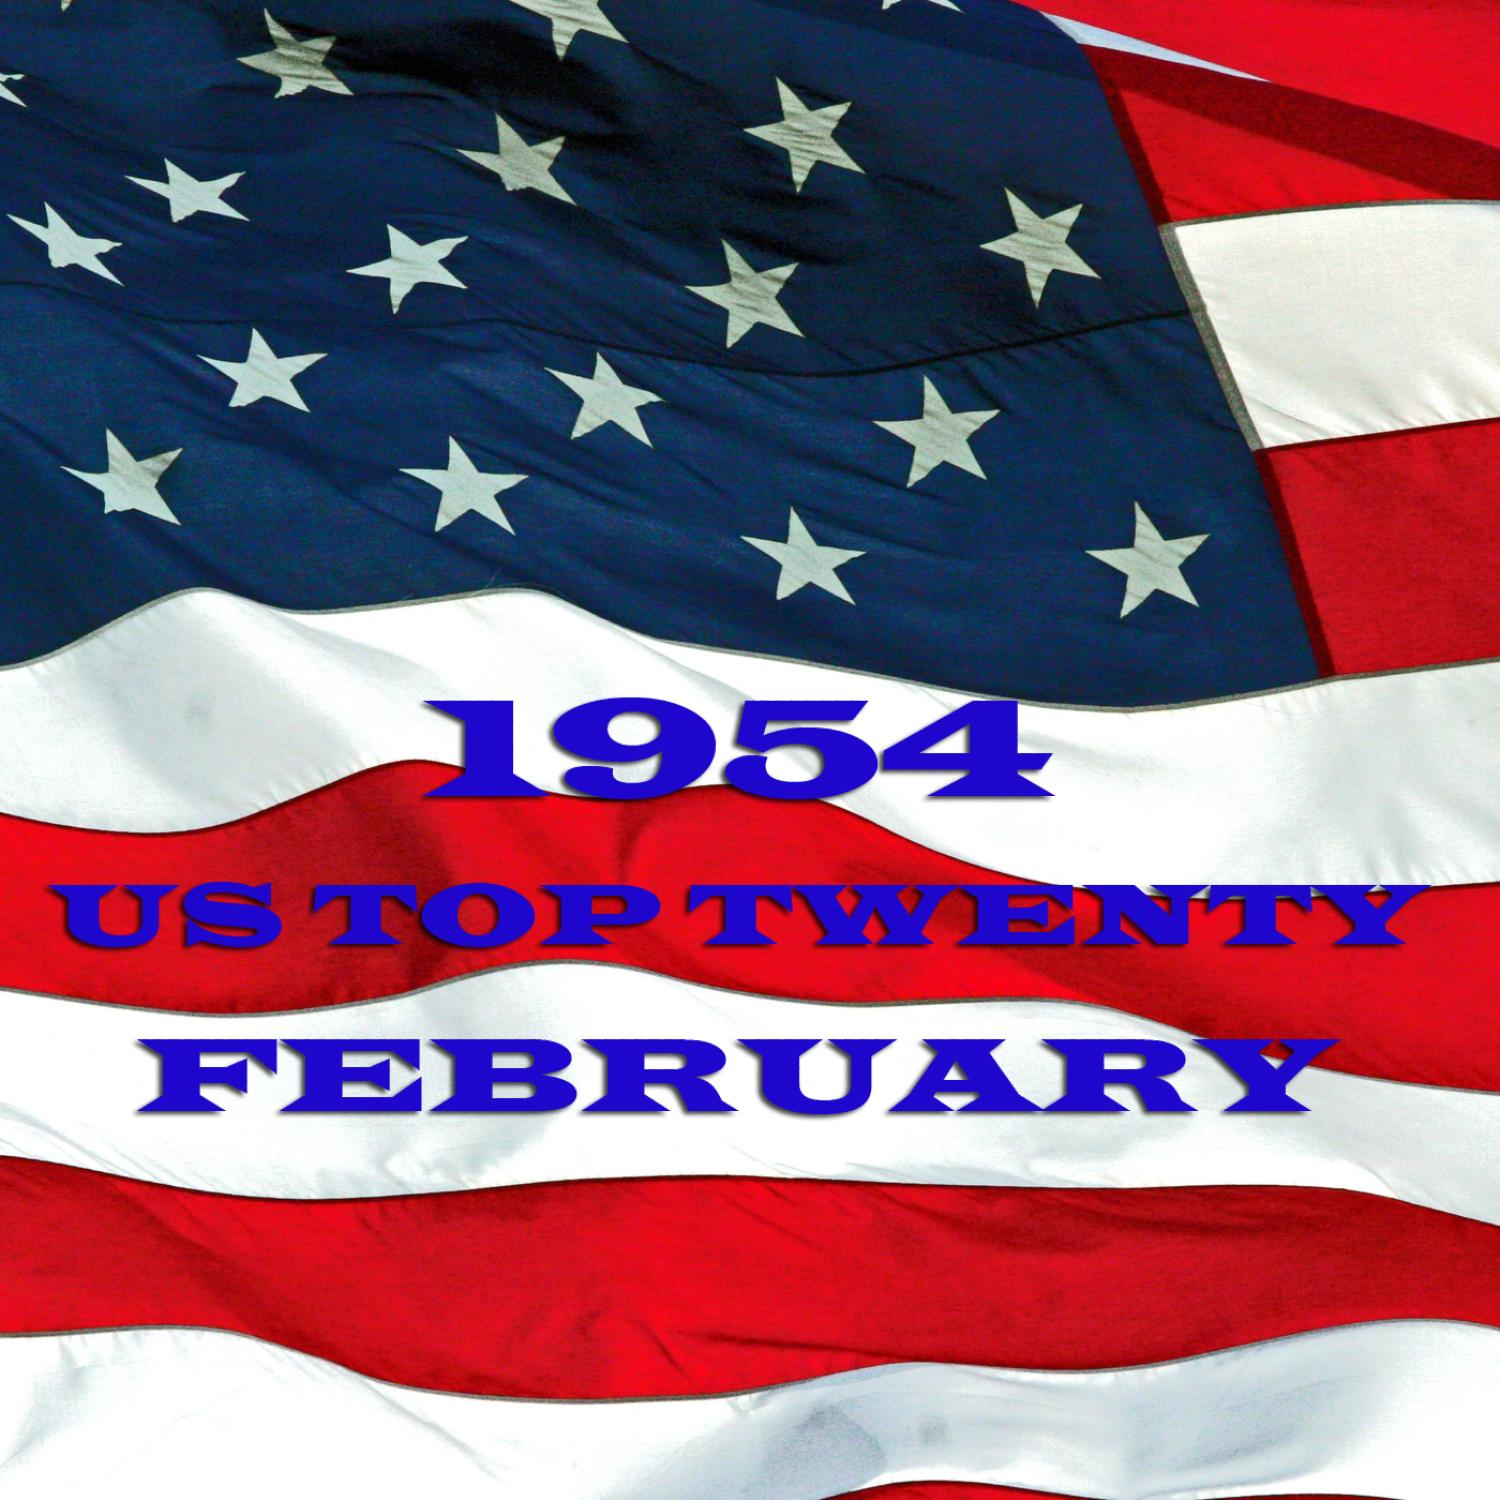 US - February - 1954